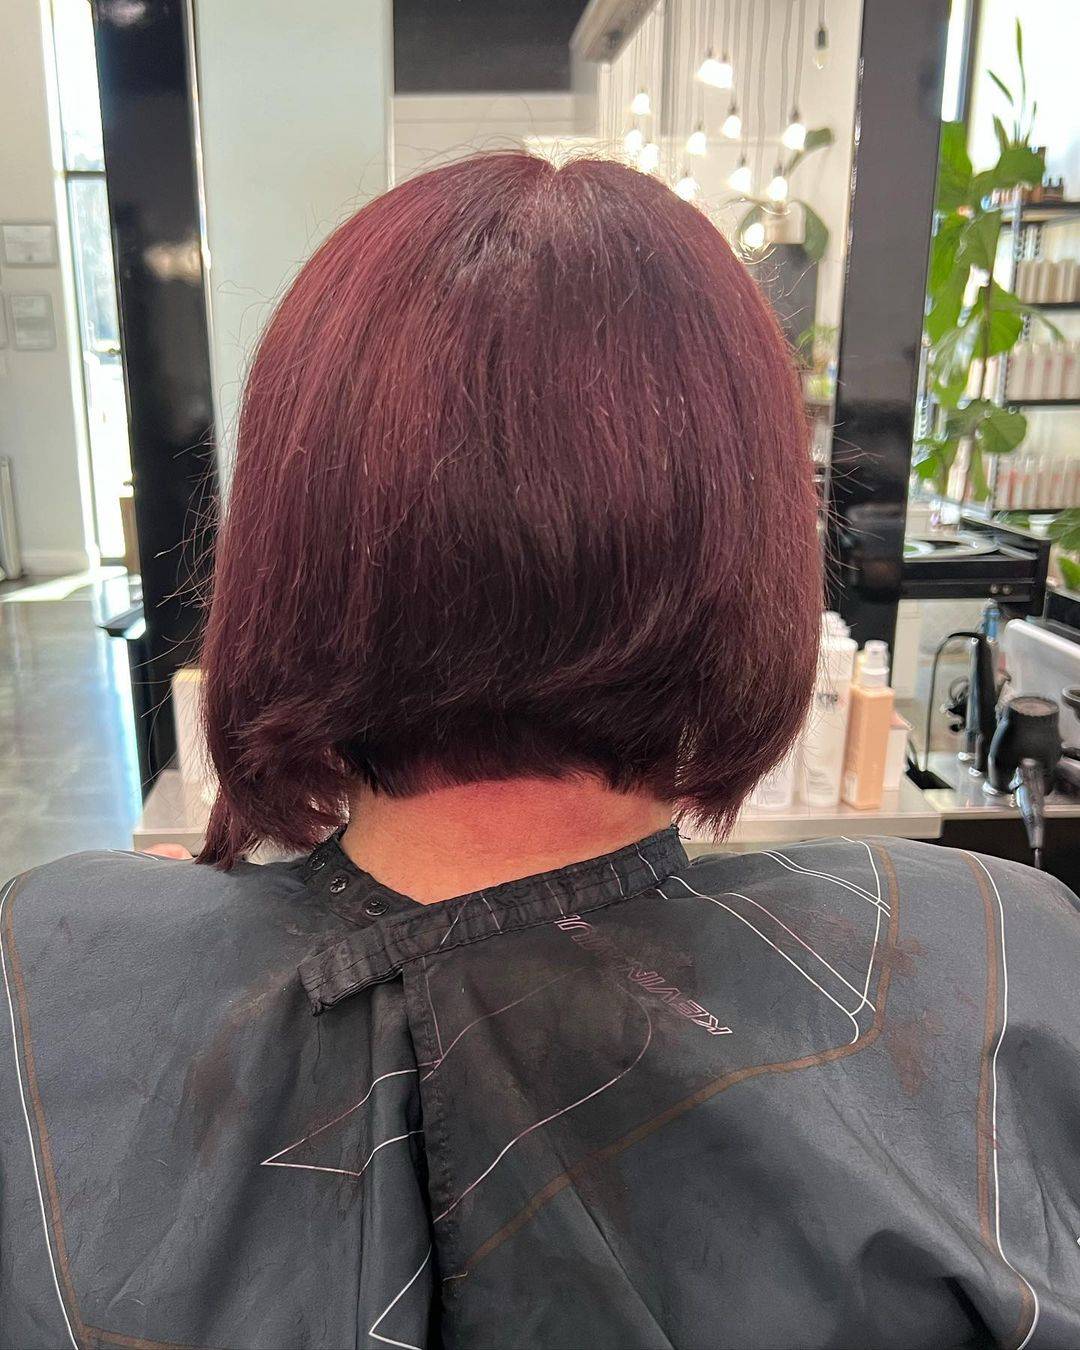 Burgundy hair color 455 burgundy hair color | burgundy hair color for women | burgundy hair color highlights Burgundy Hair Color